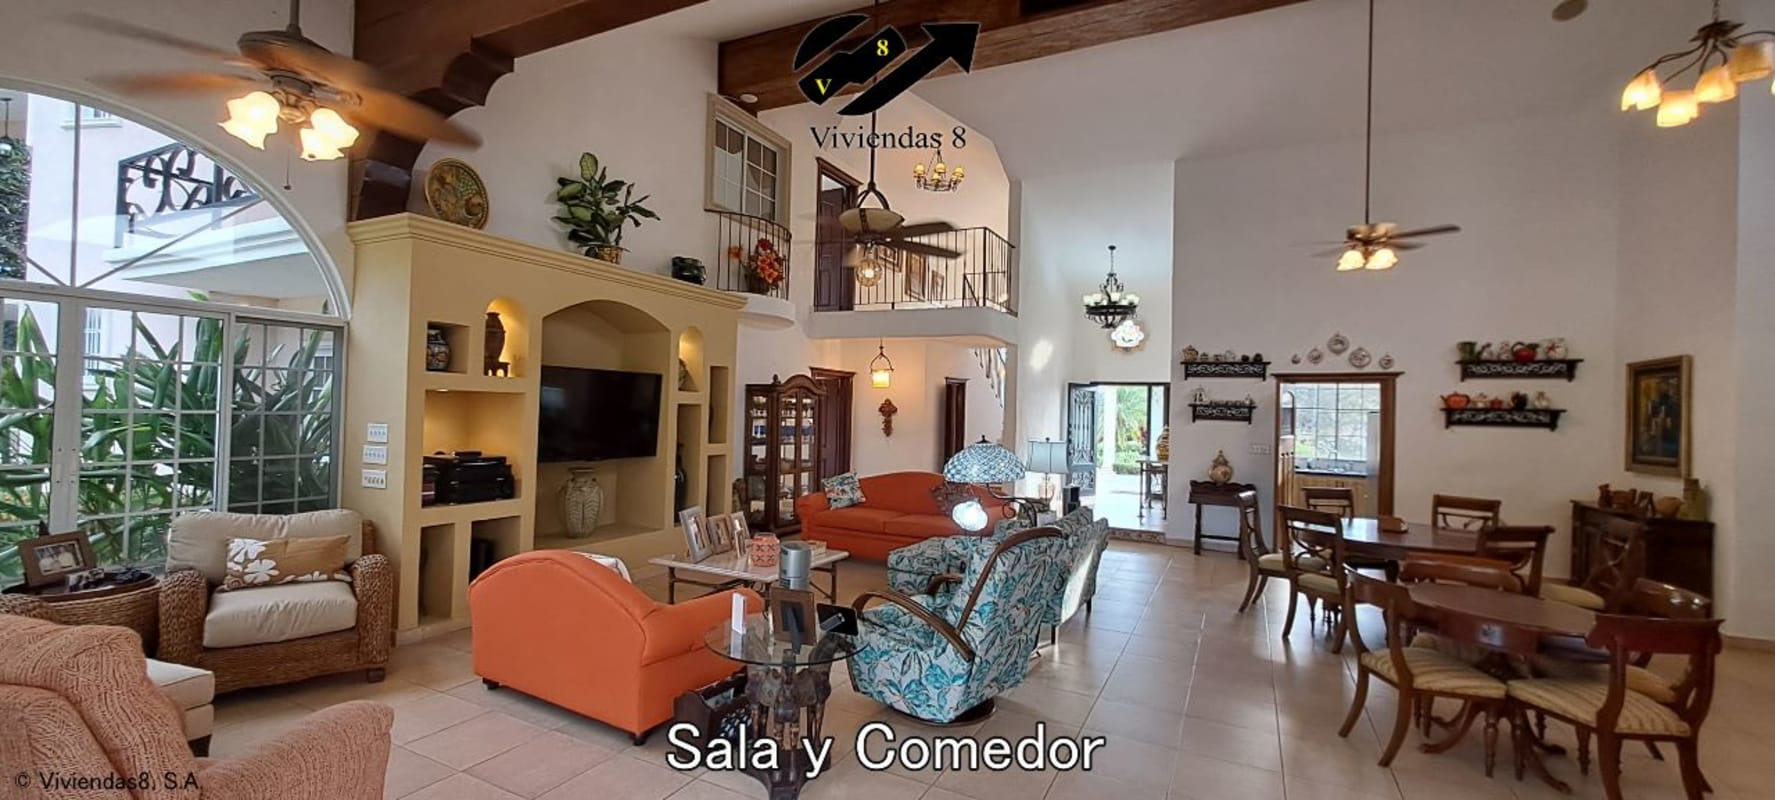 Casa en Coronado 725K 4 Recamaras y 5.5 Baños con Piscina.